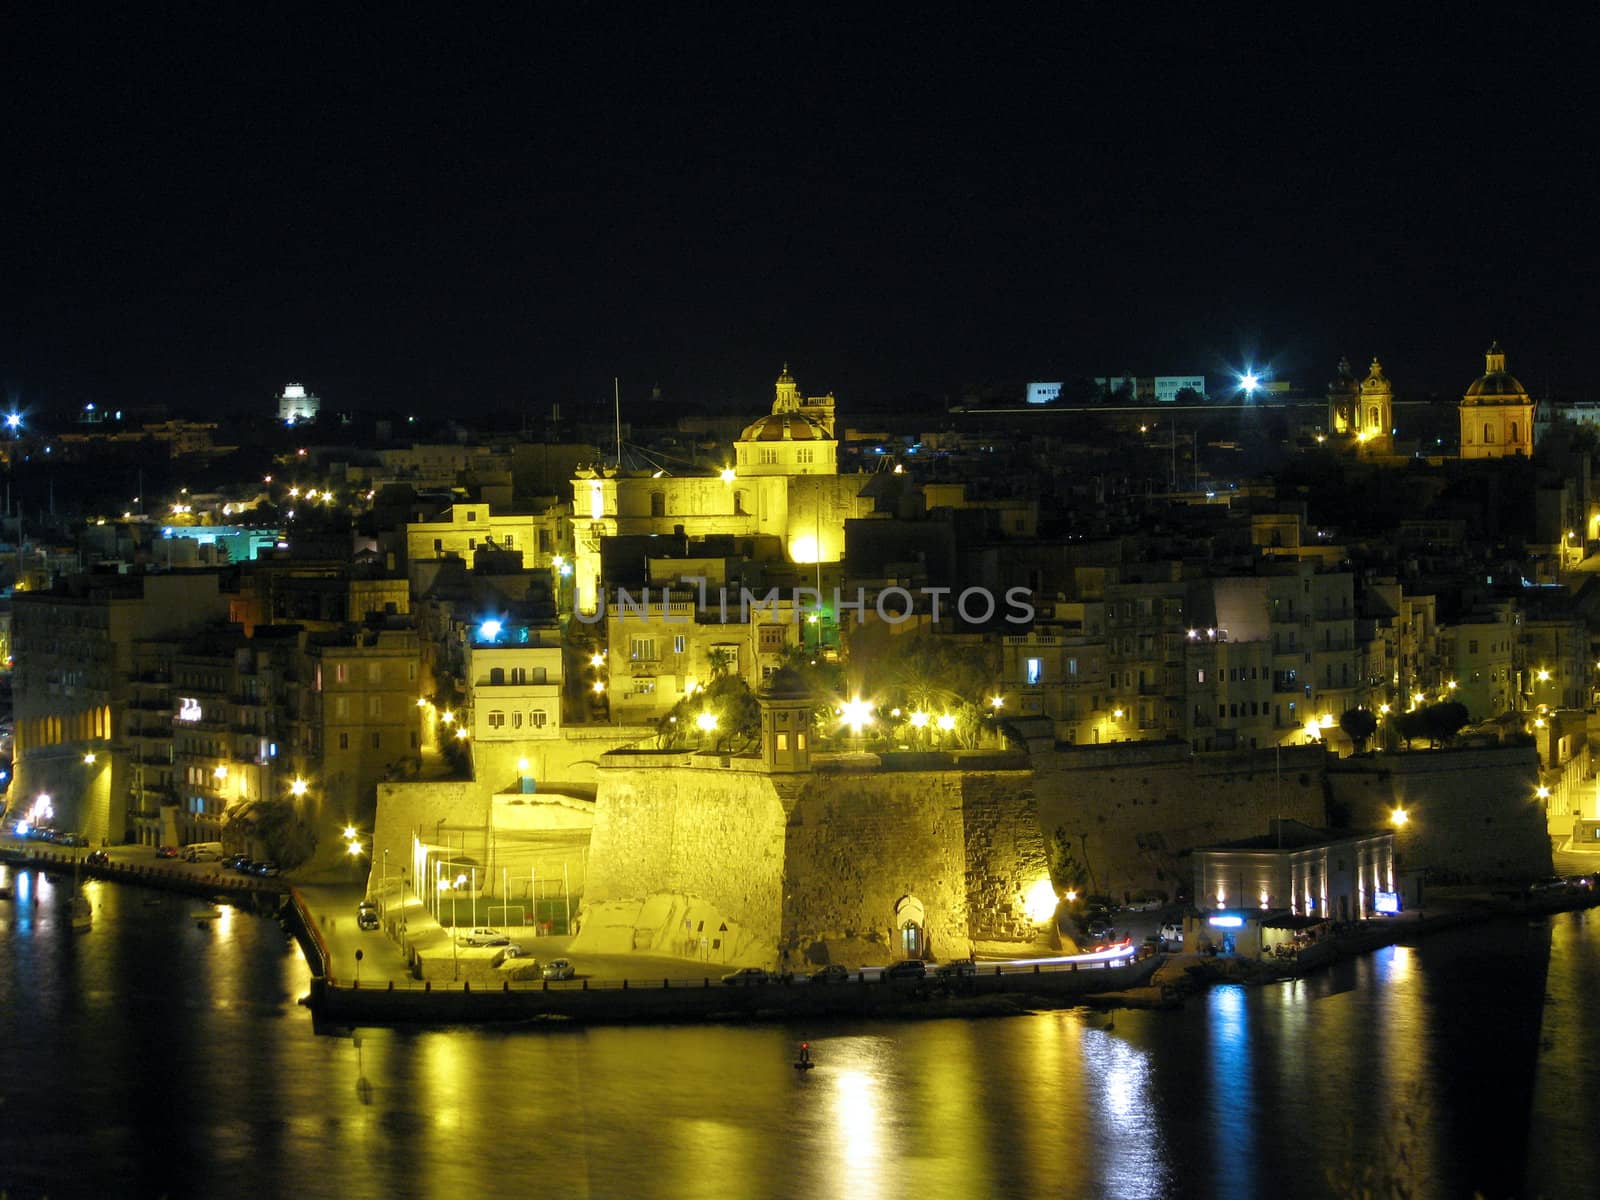 The city of Senglea as seen from Valletta, Malta.